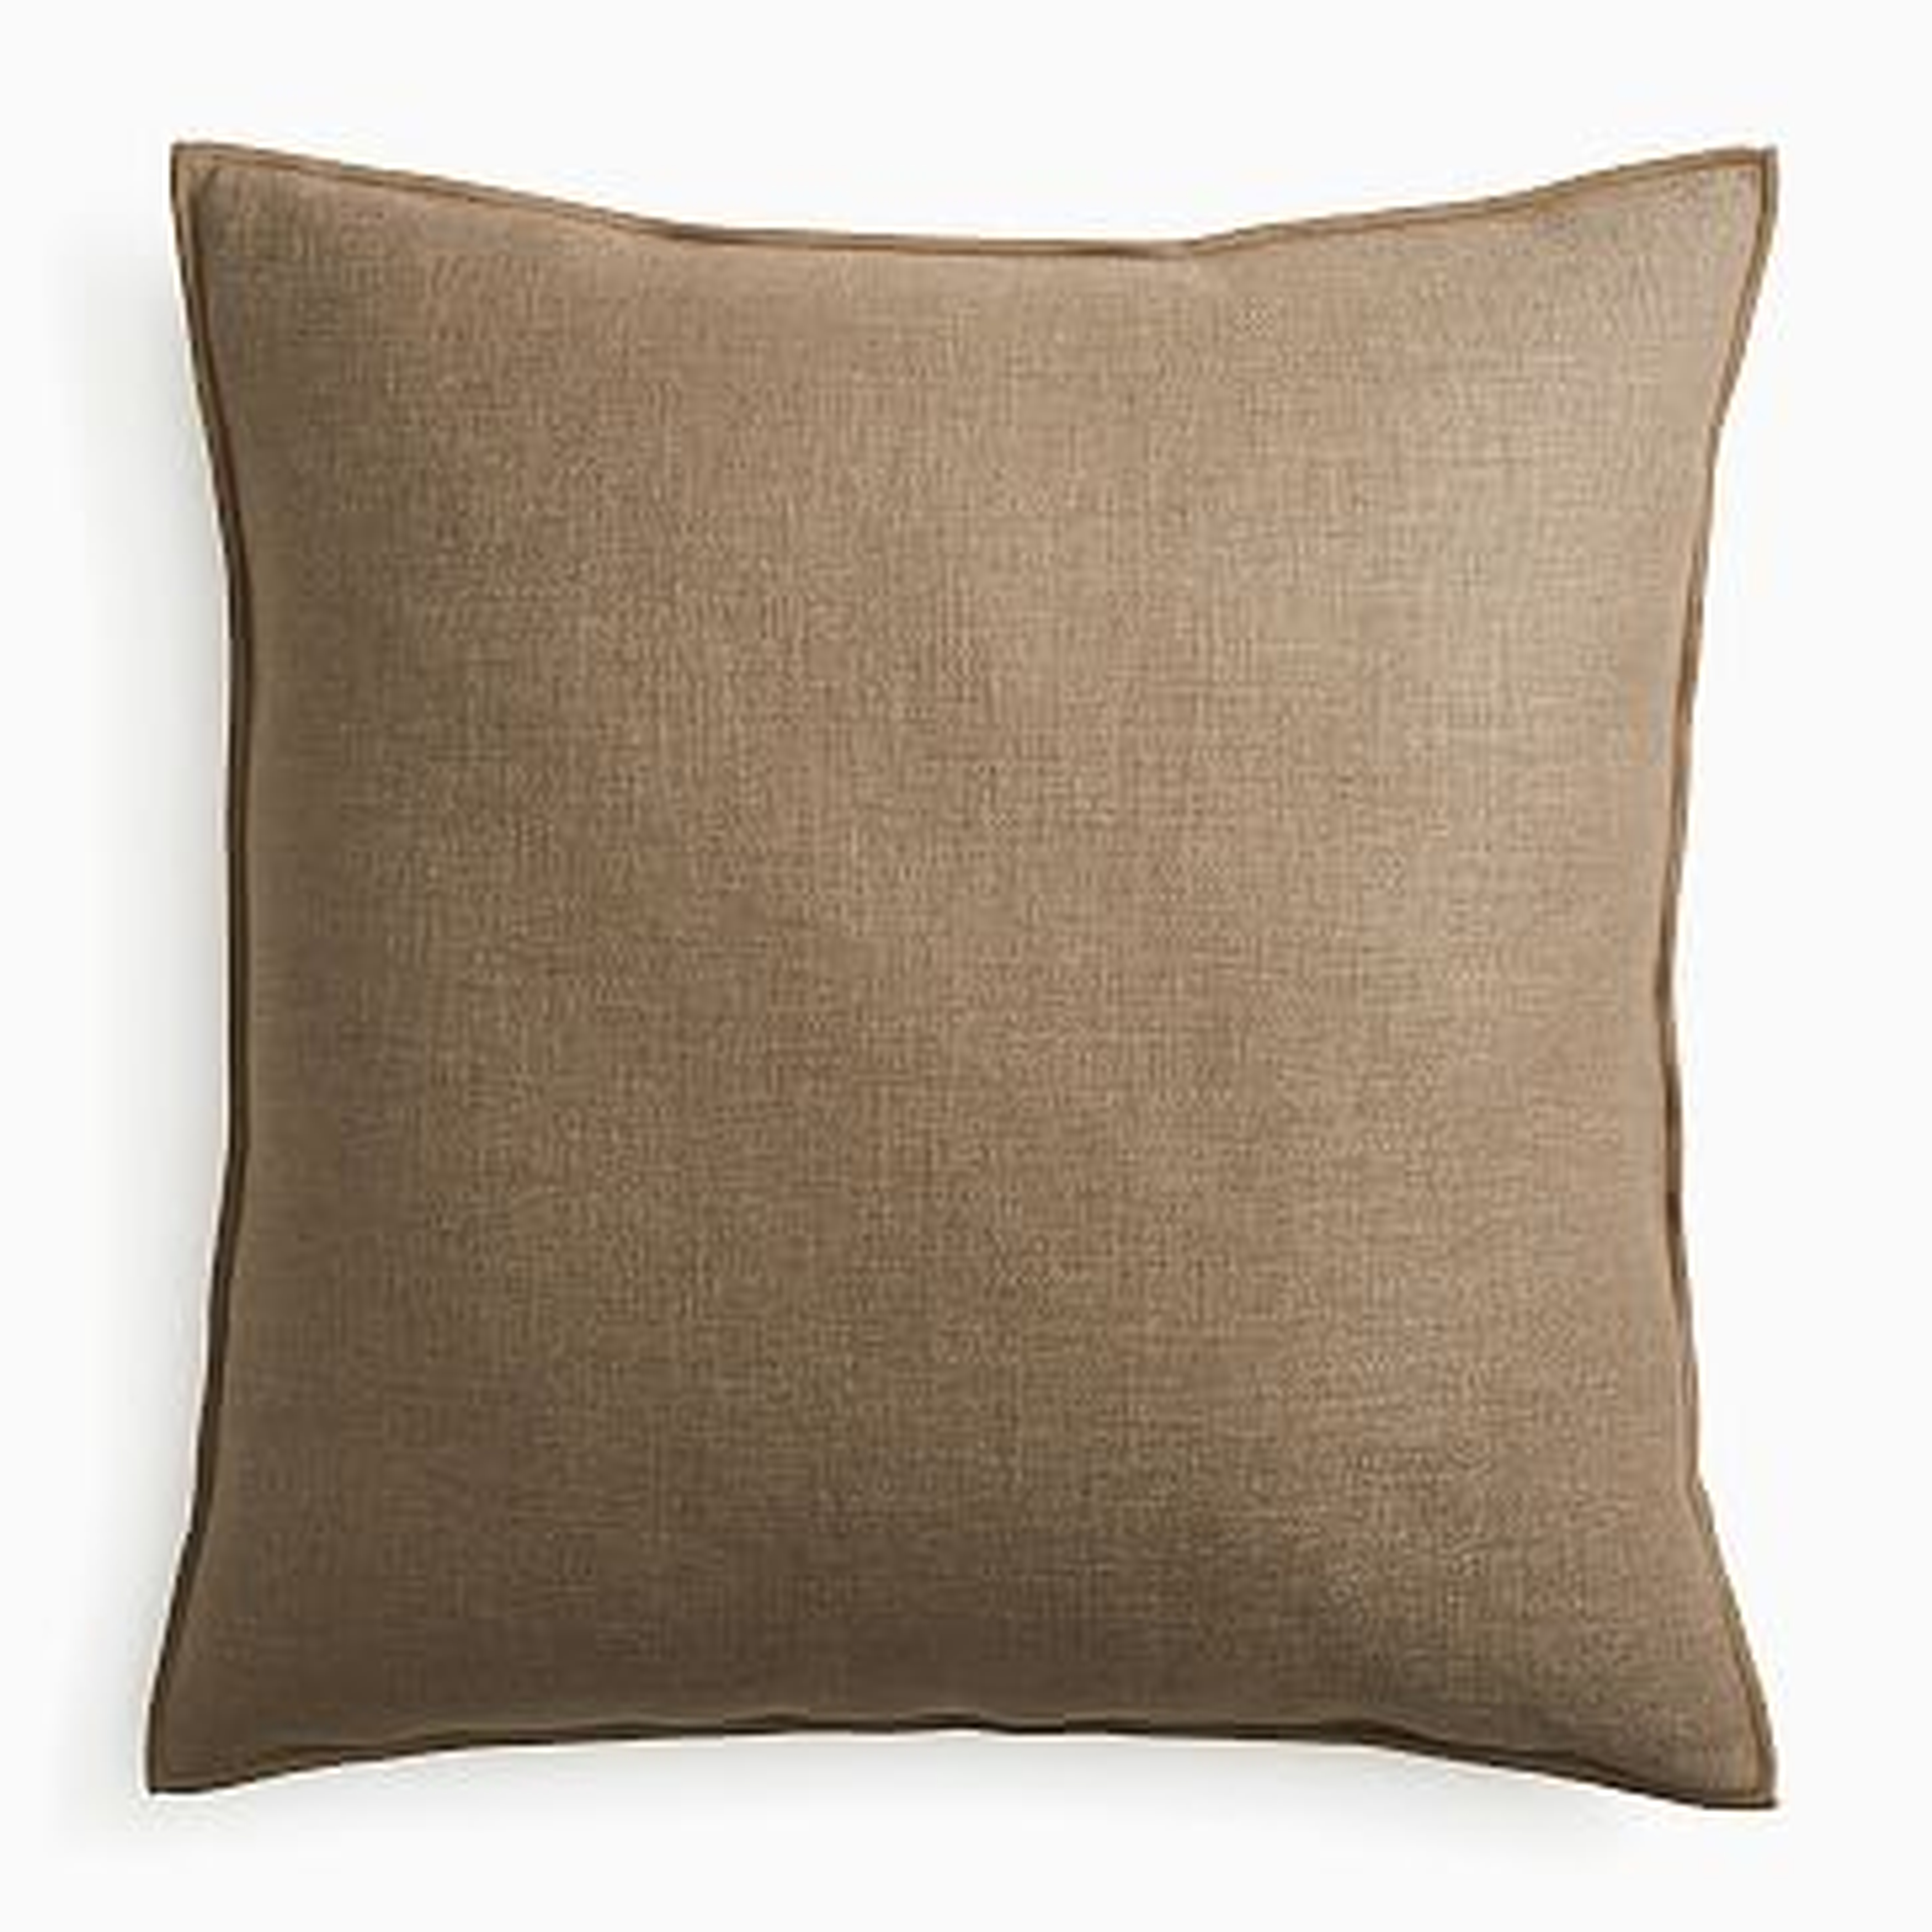 Classic Linen Pillow Cover, 24"x24", Mocha - West Elm